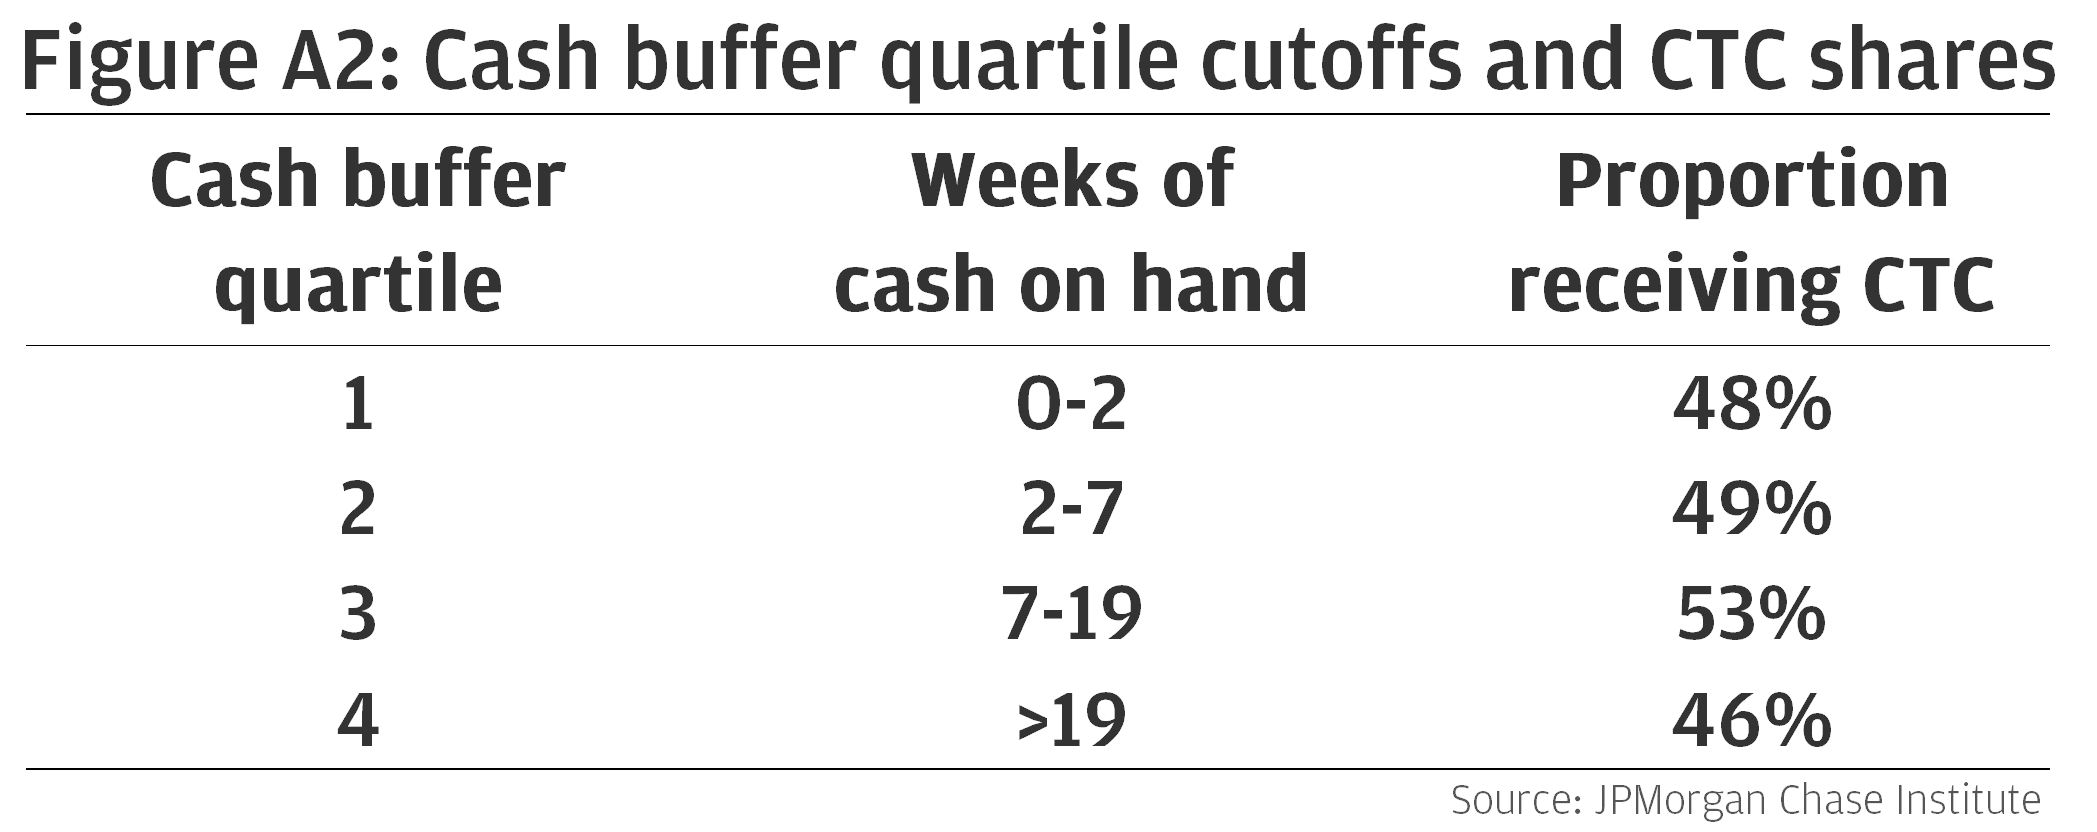 Cash buffer quartile cutoffs and CTC shares